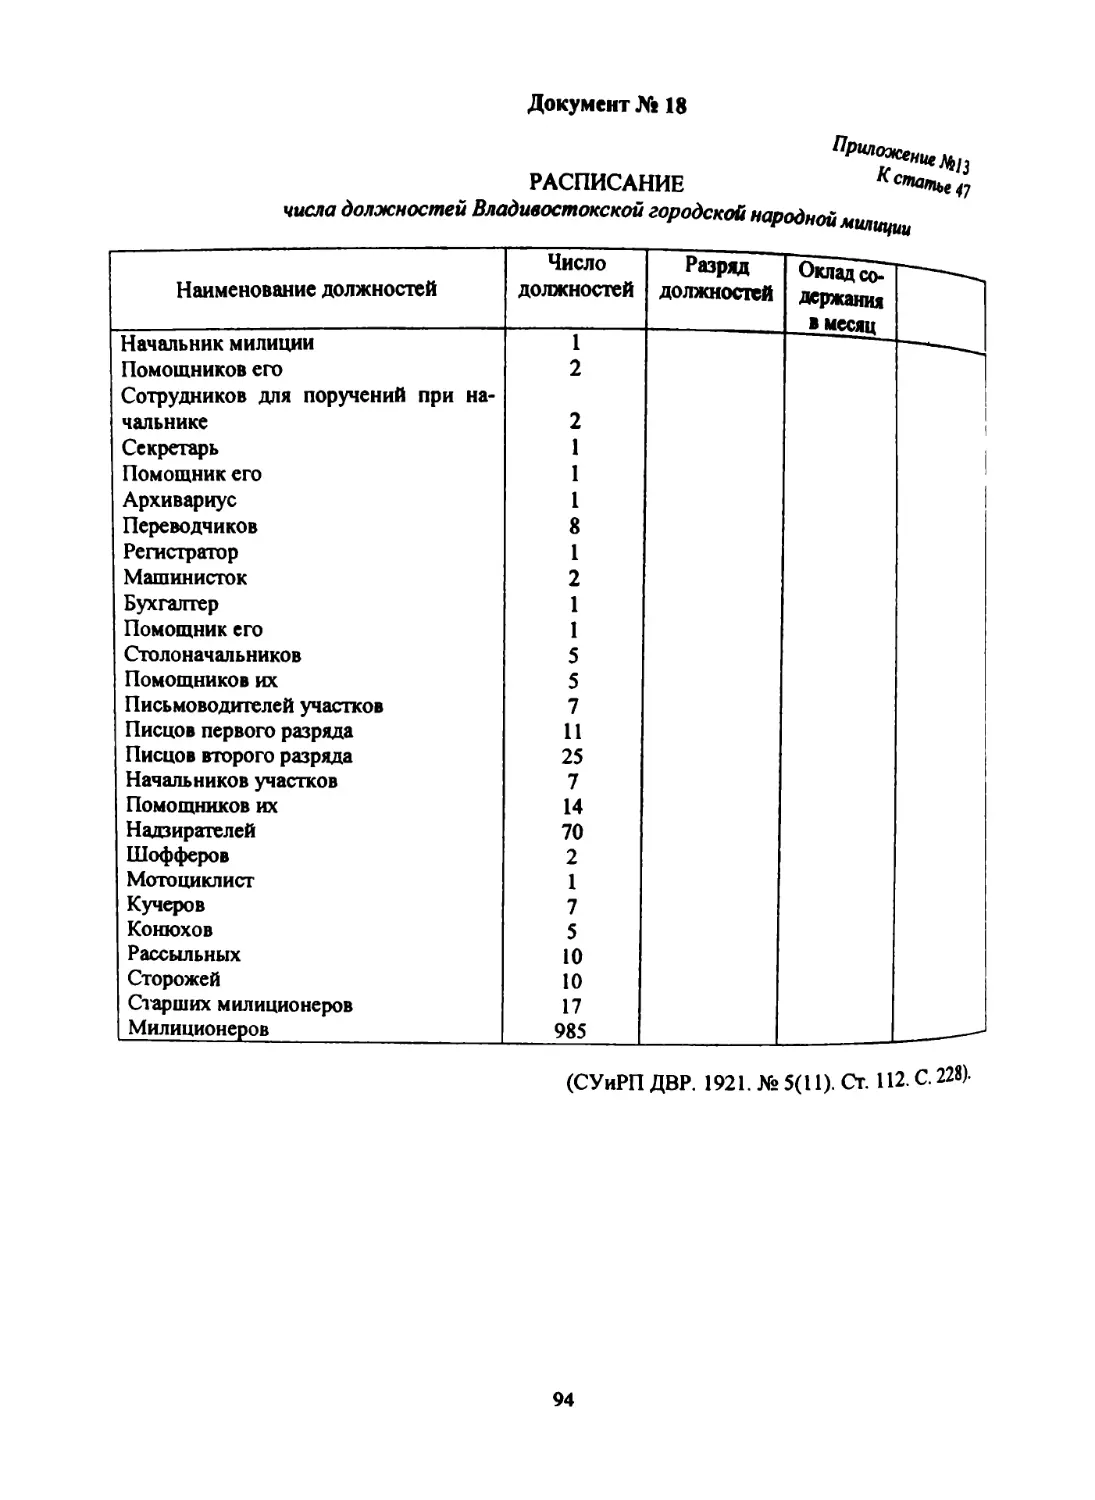 Документ № 18 Приложение № 13 к ст. 47 «Положения...»: «Расписание числа должностей Владивостокской городской народной милиции»